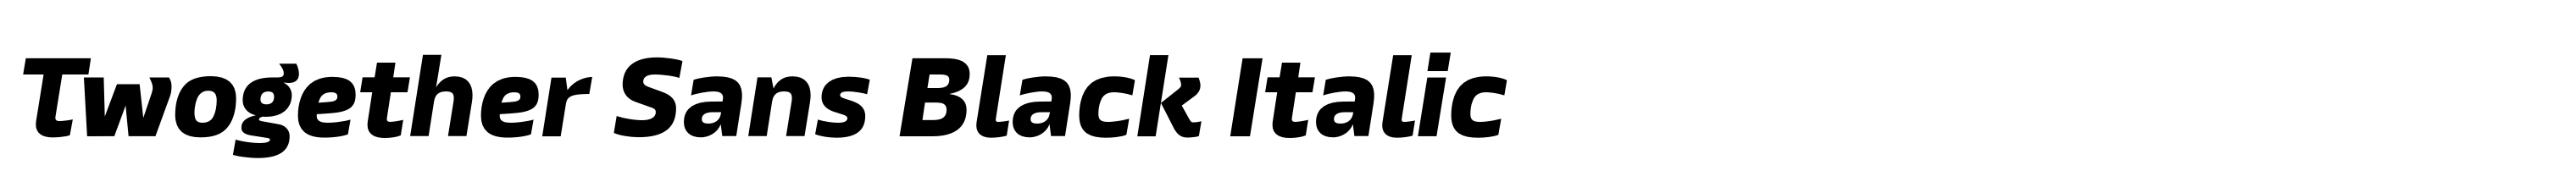 Twogether Sans Black Italic